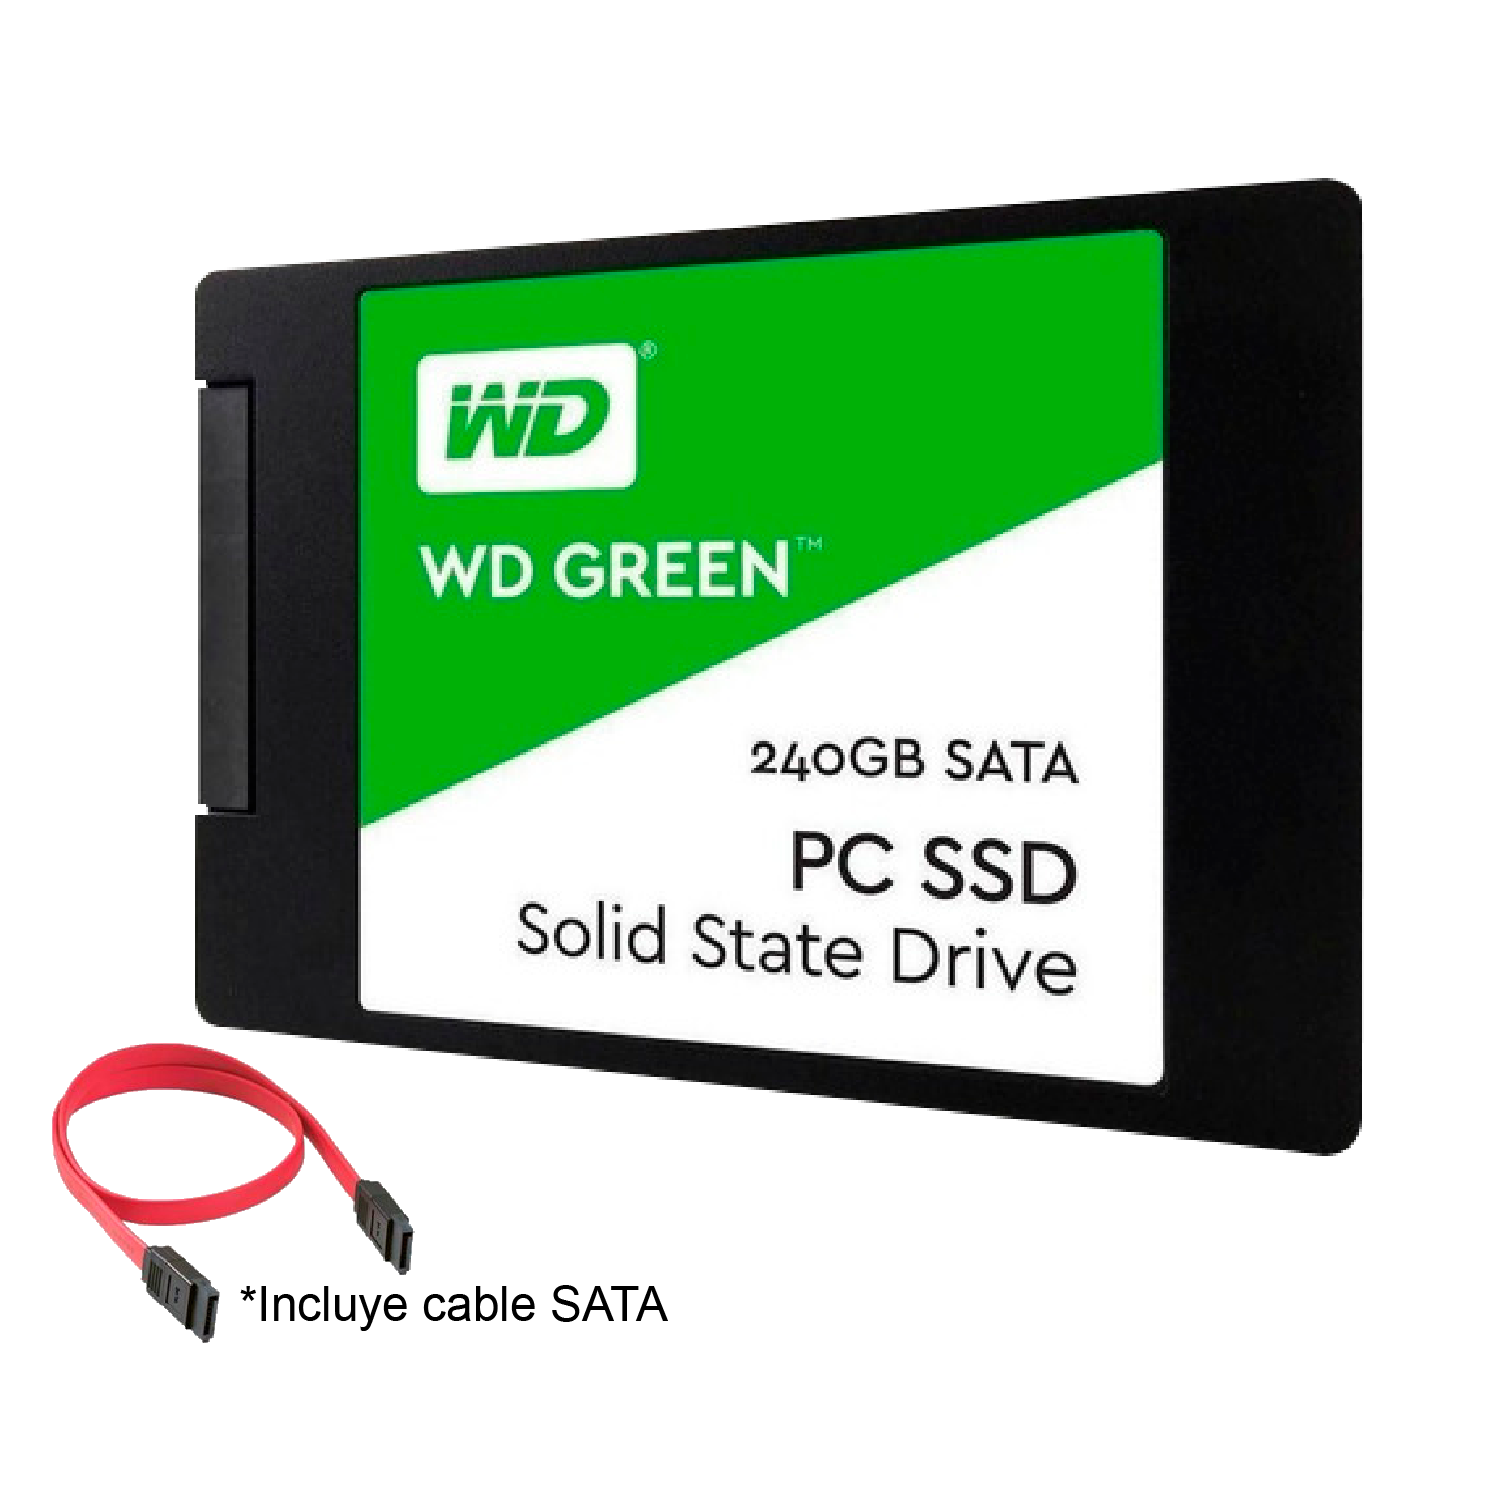 agitación Arthur Conan Doyle Suburbio SSD Western Digital Green 240gb – disco duro solido incluye cable SATA